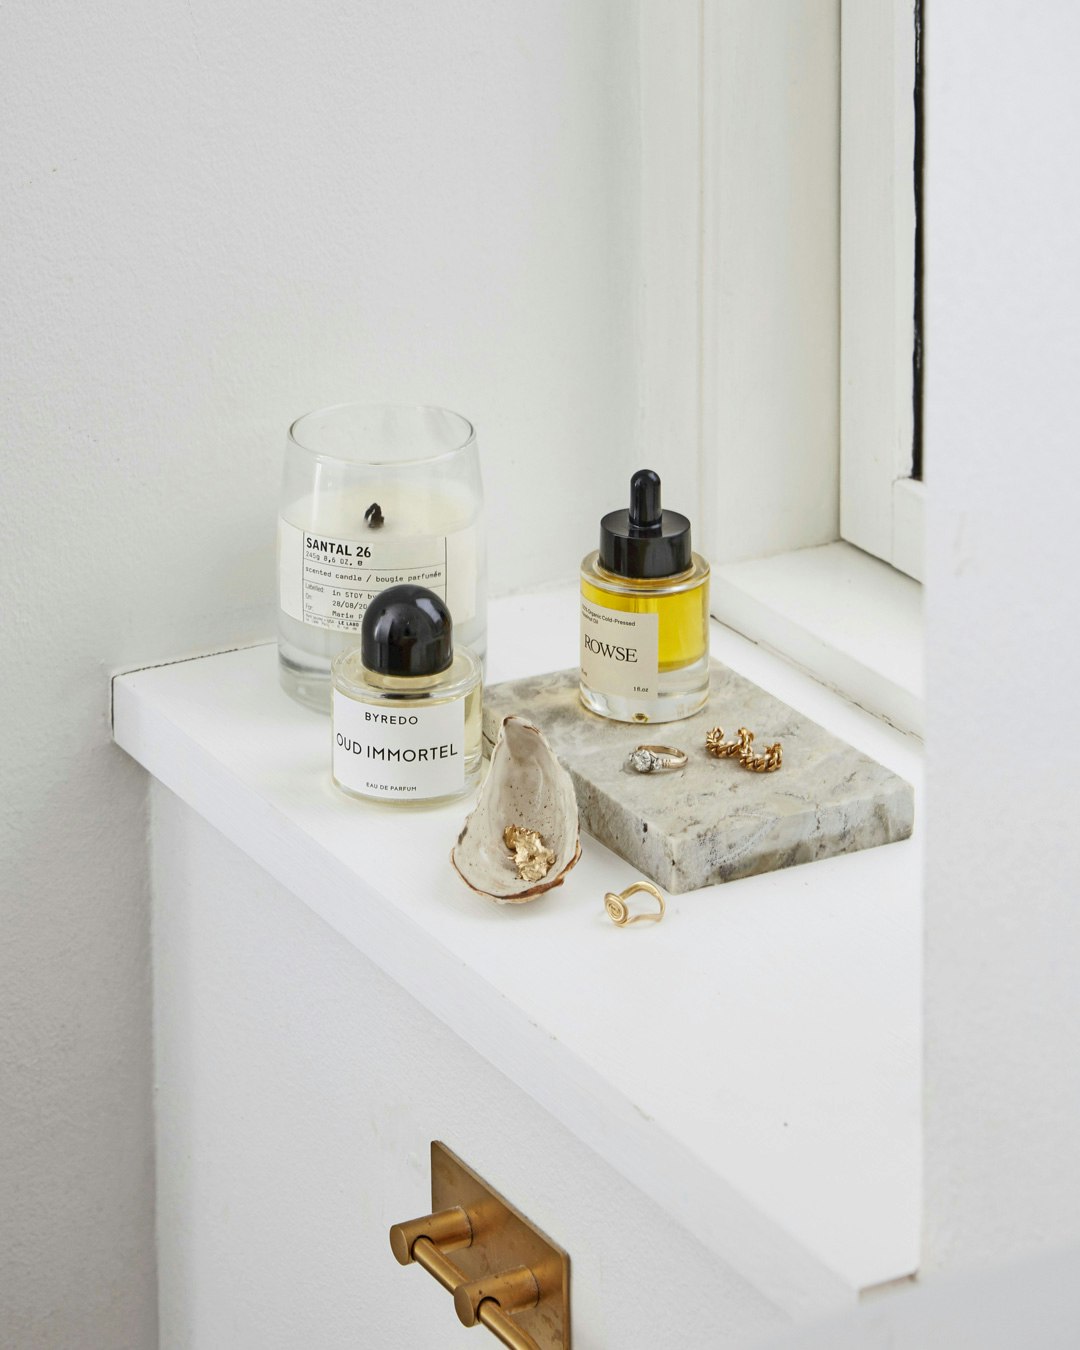 detaljer_badevaerelse_smykker_parfume_minimalistisk